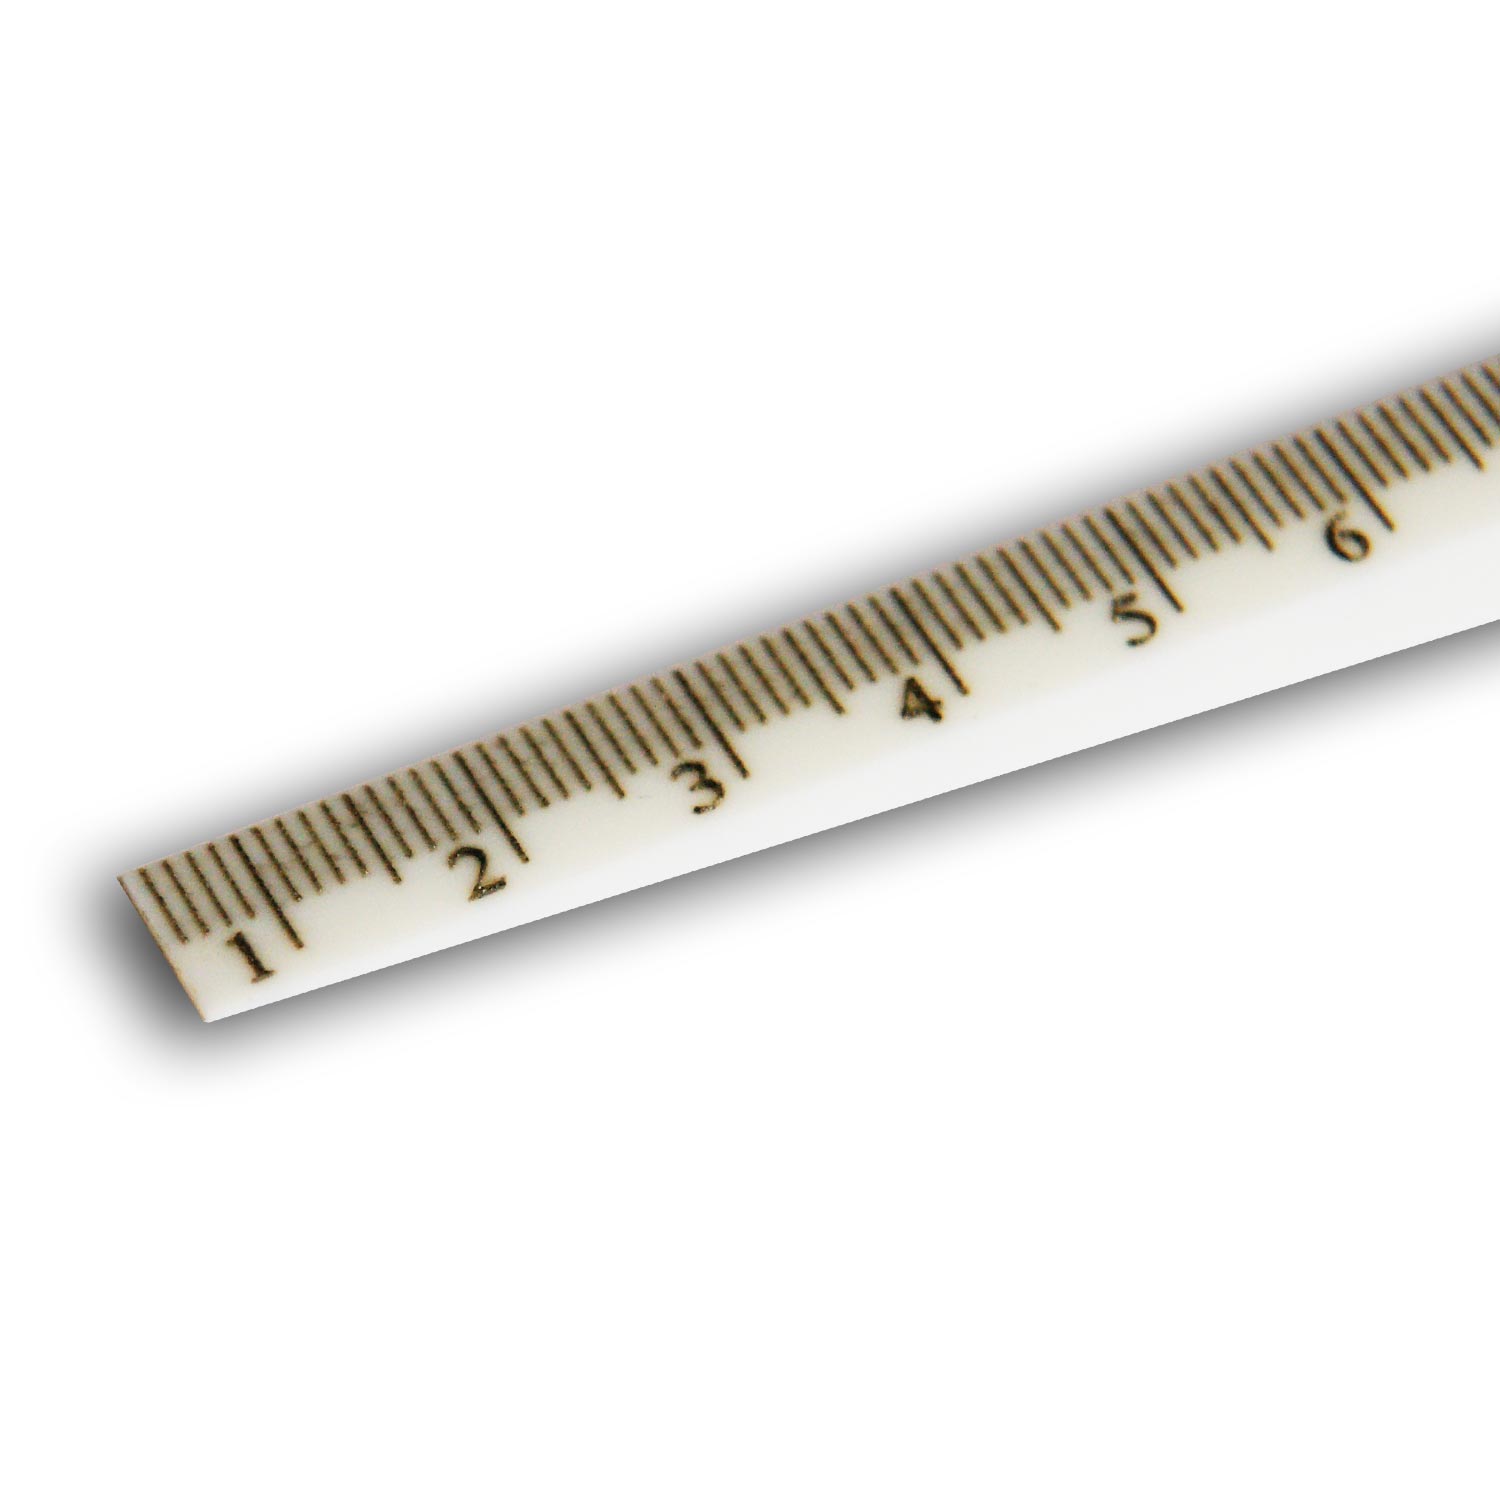 Messkeil zur Messung von Spaltbreiten Werkzeugstahl Messbereich 0,5-11 mm 